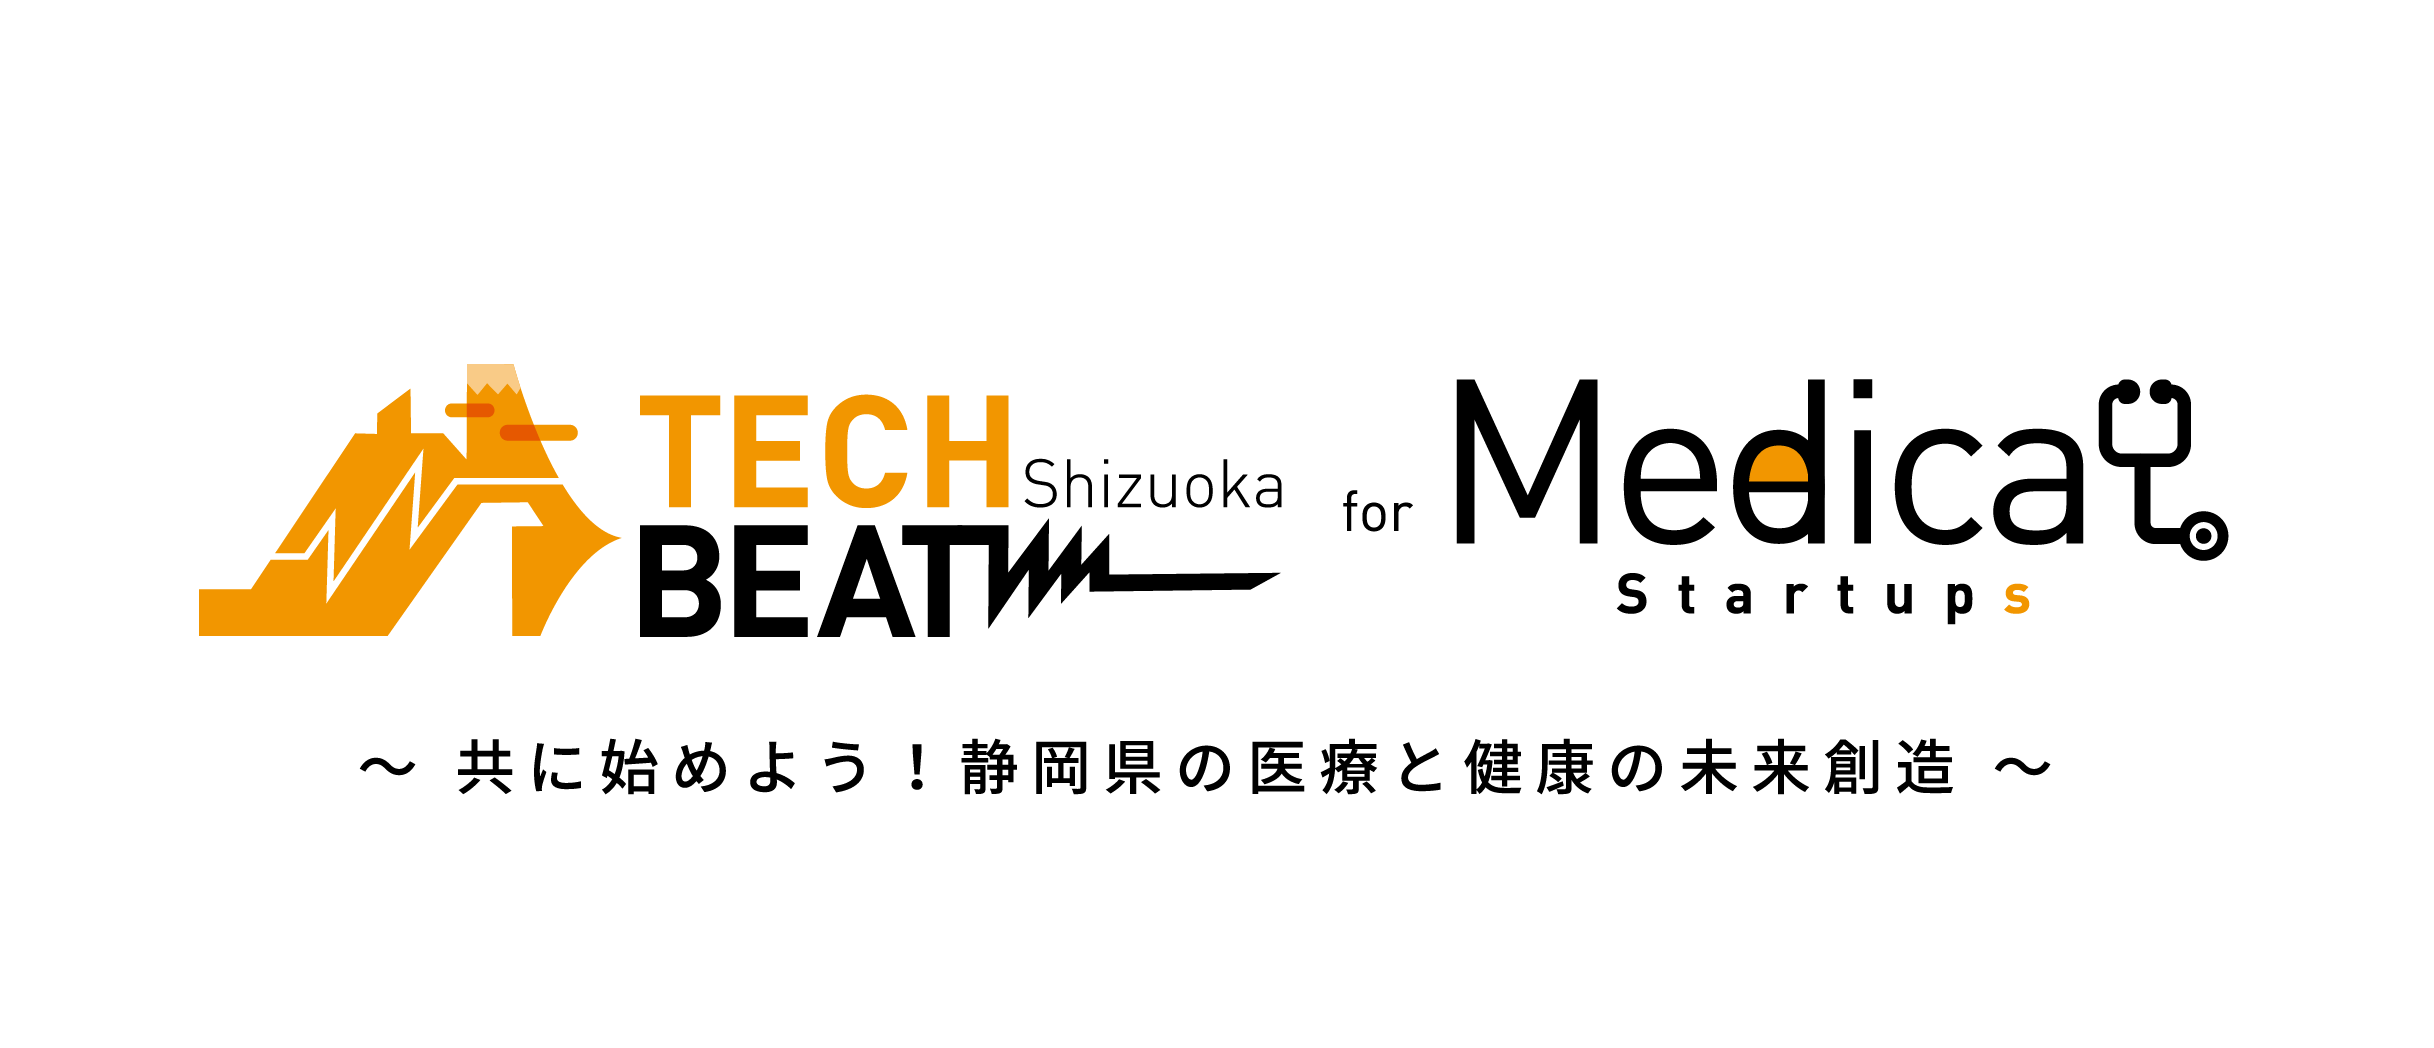 techbeat-shizuoka